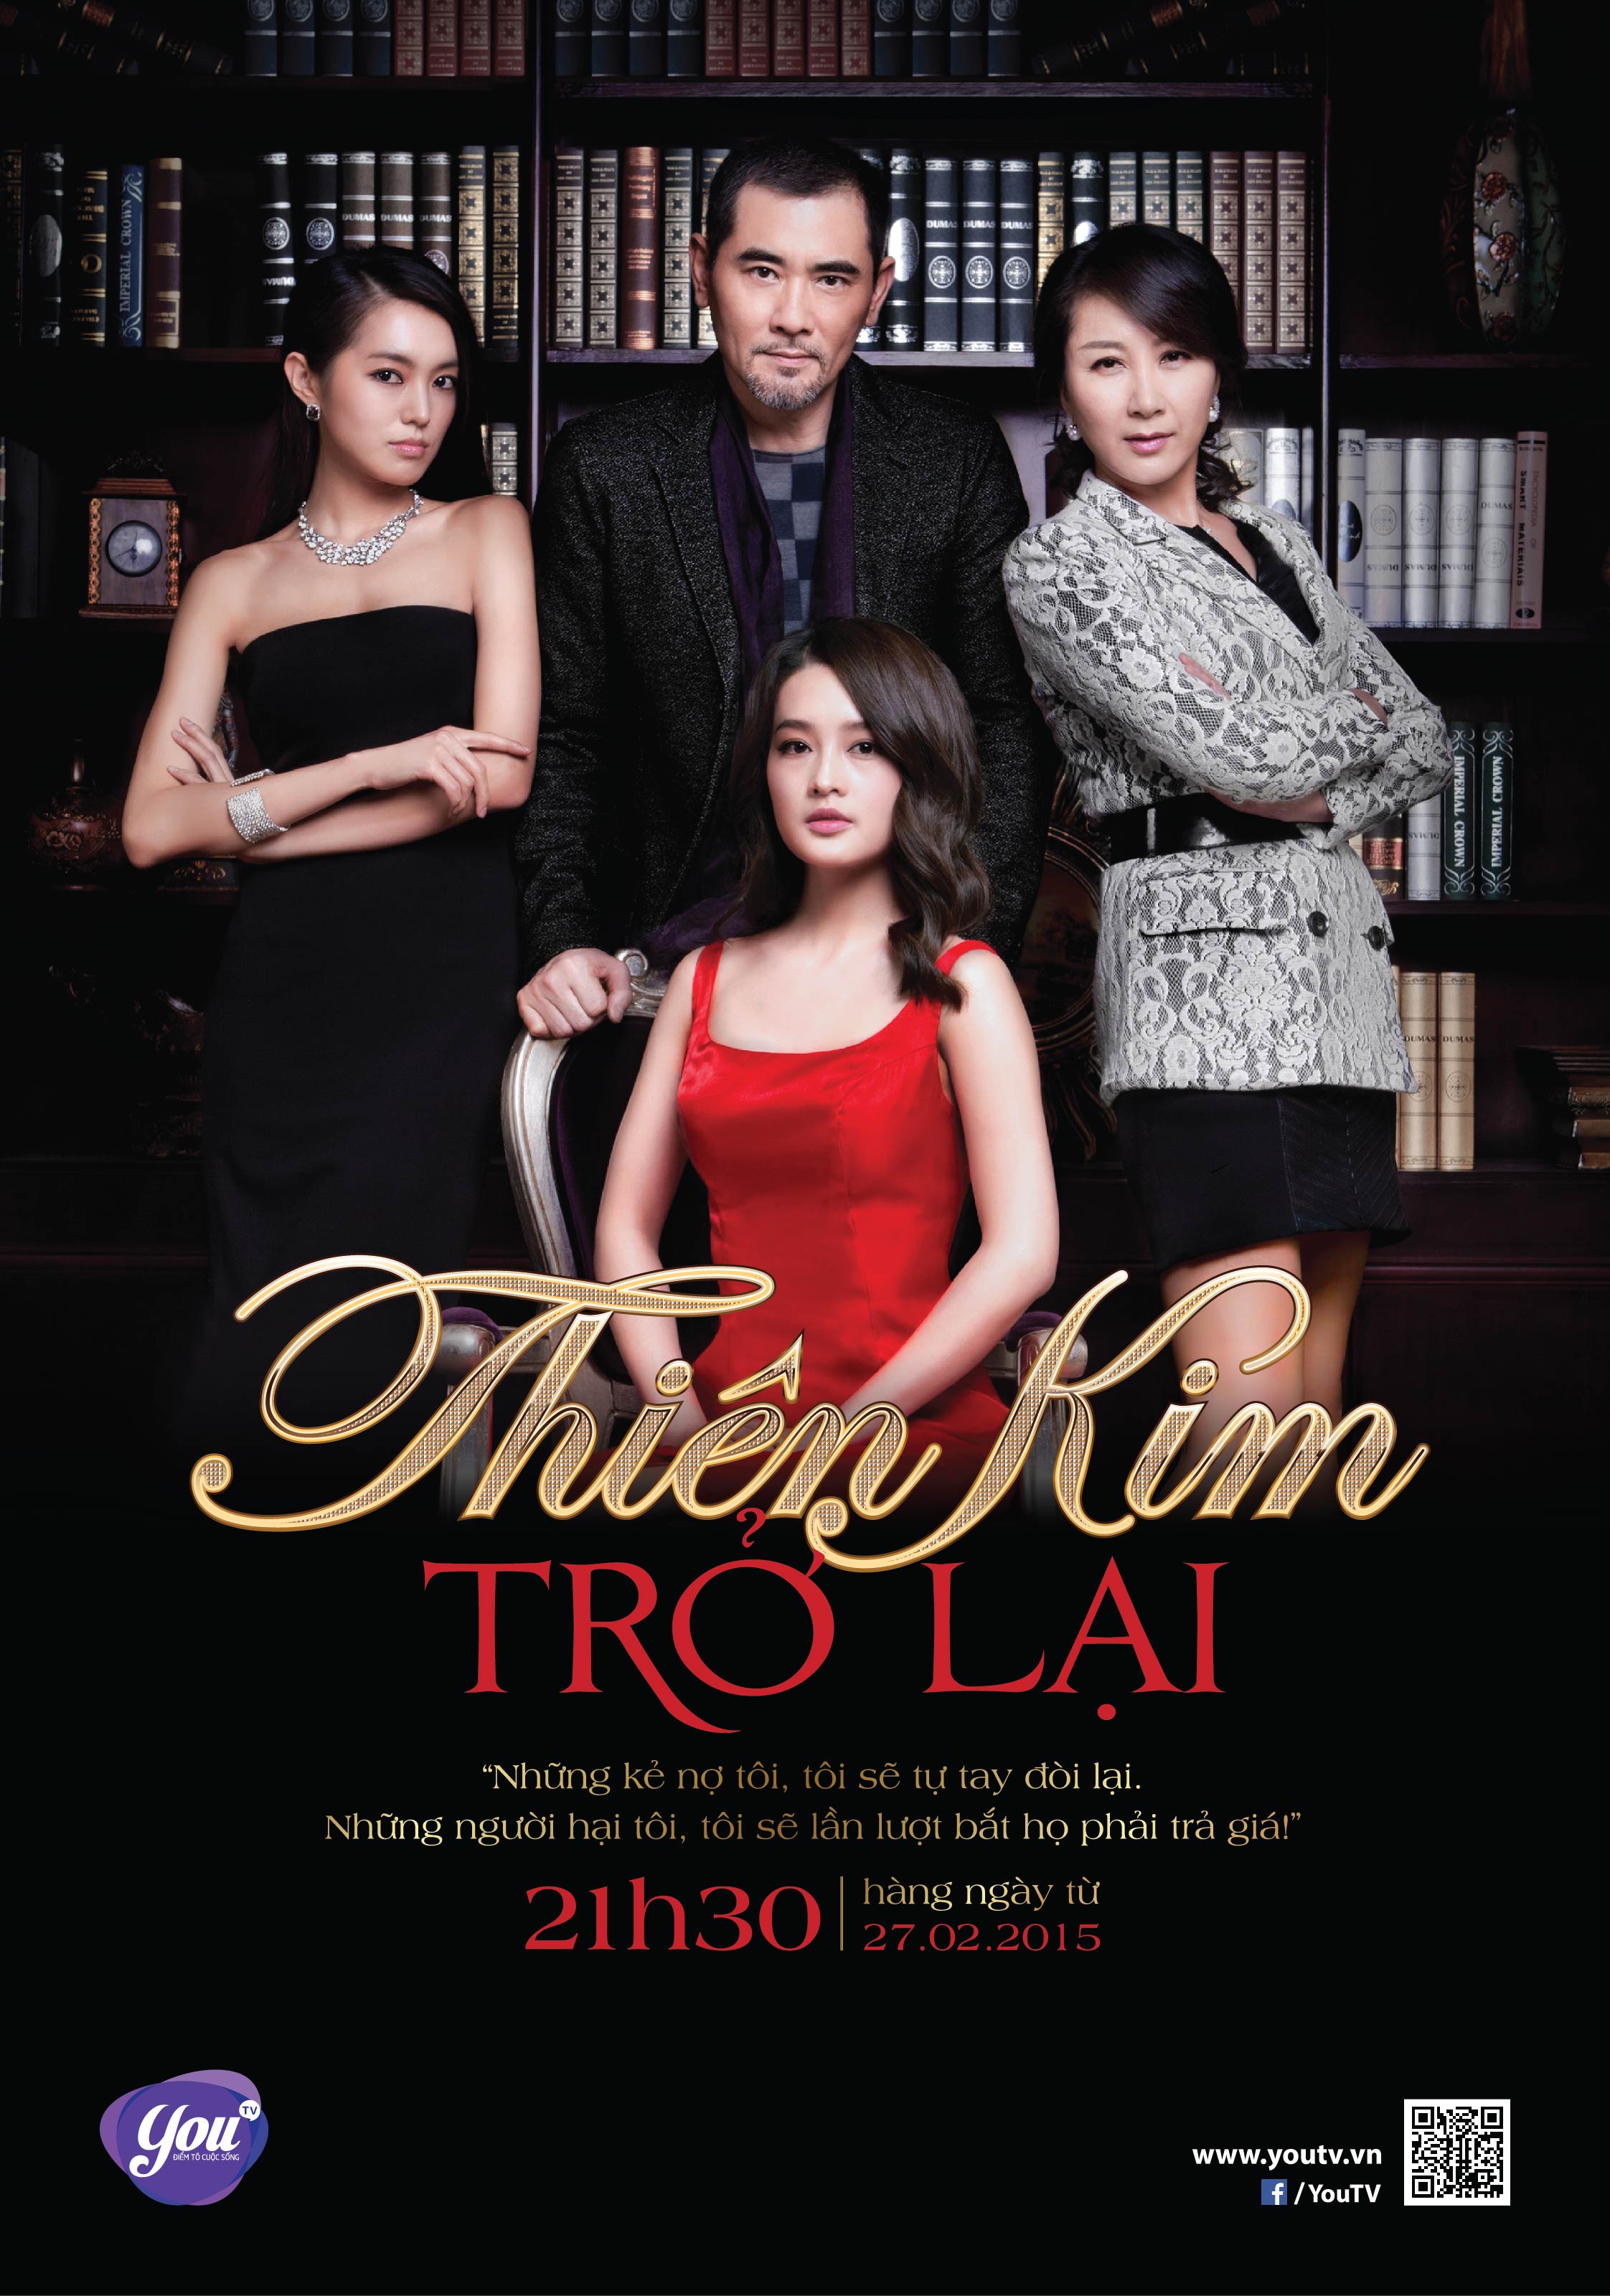 Print_ad_Thien_kim_tro_lai_190x271mm-01